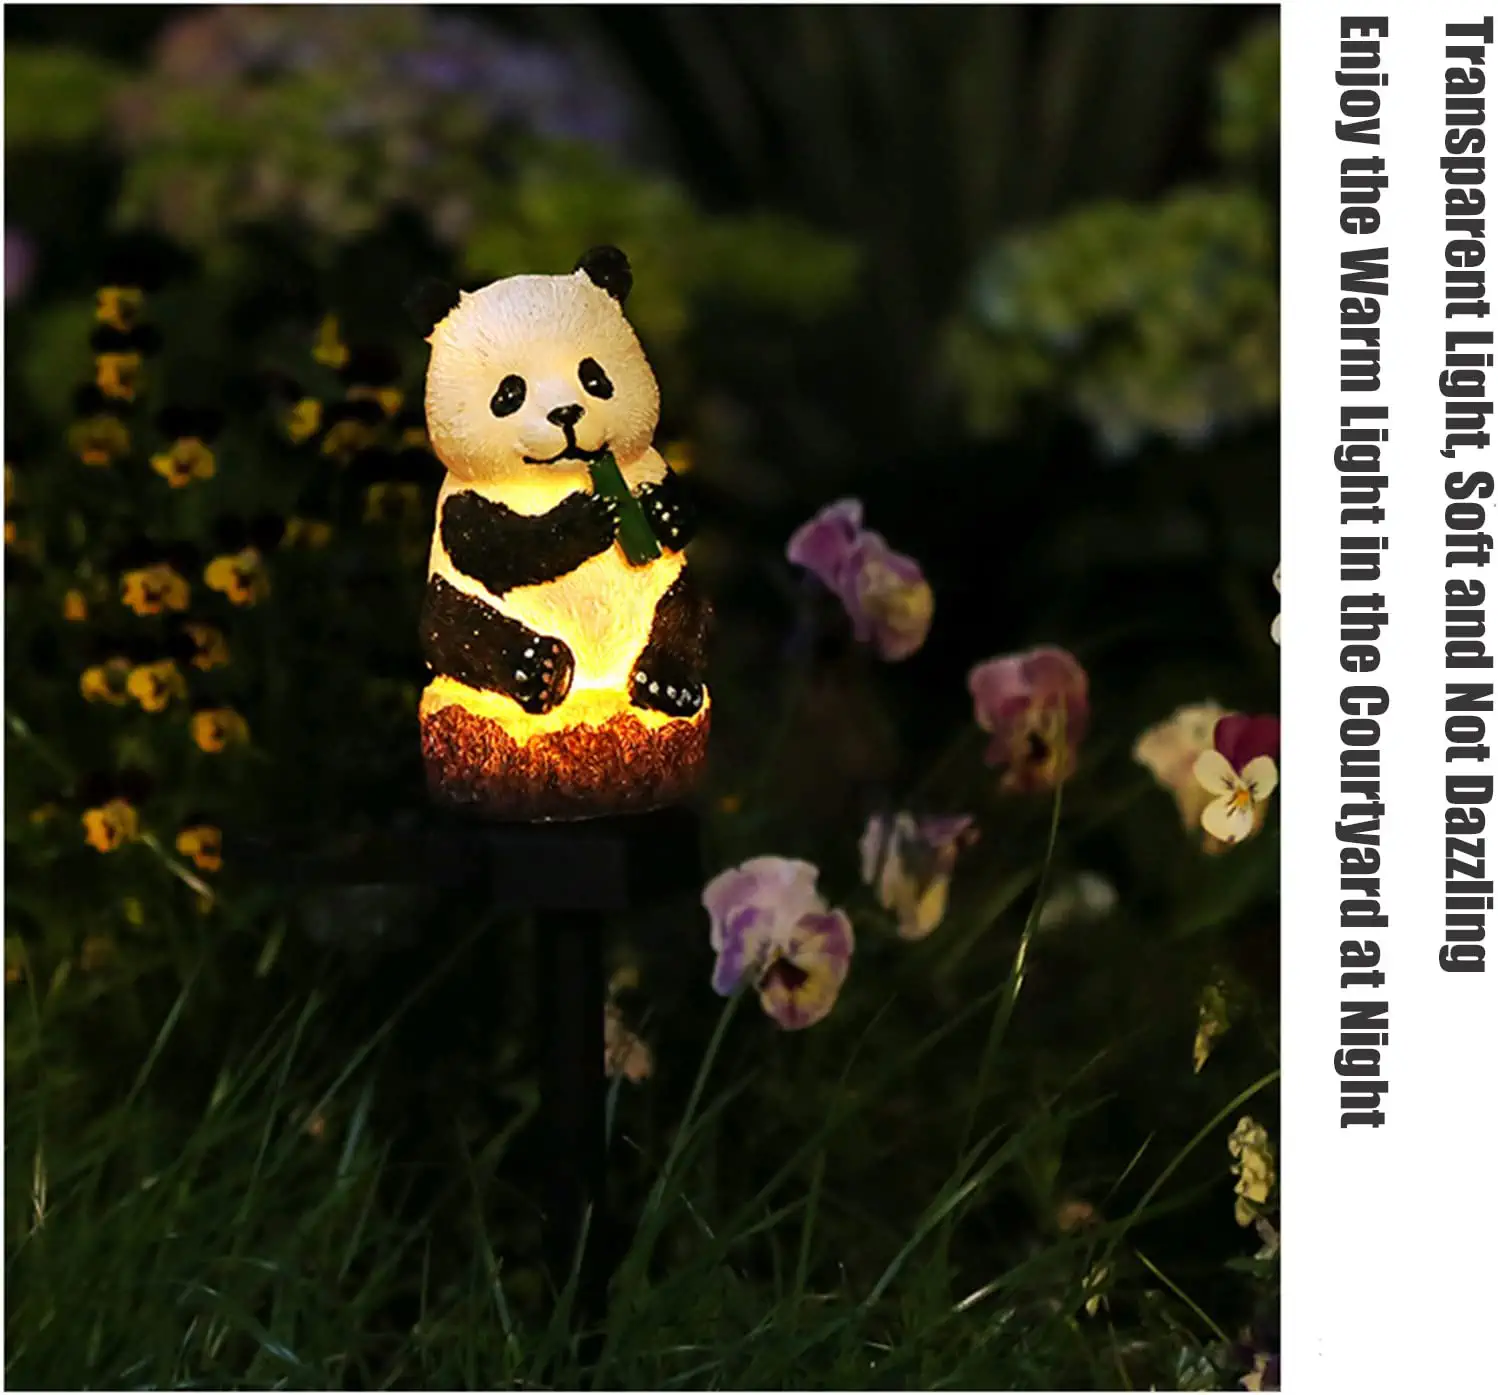 Garden Solar Resin Cute Panda LED Light